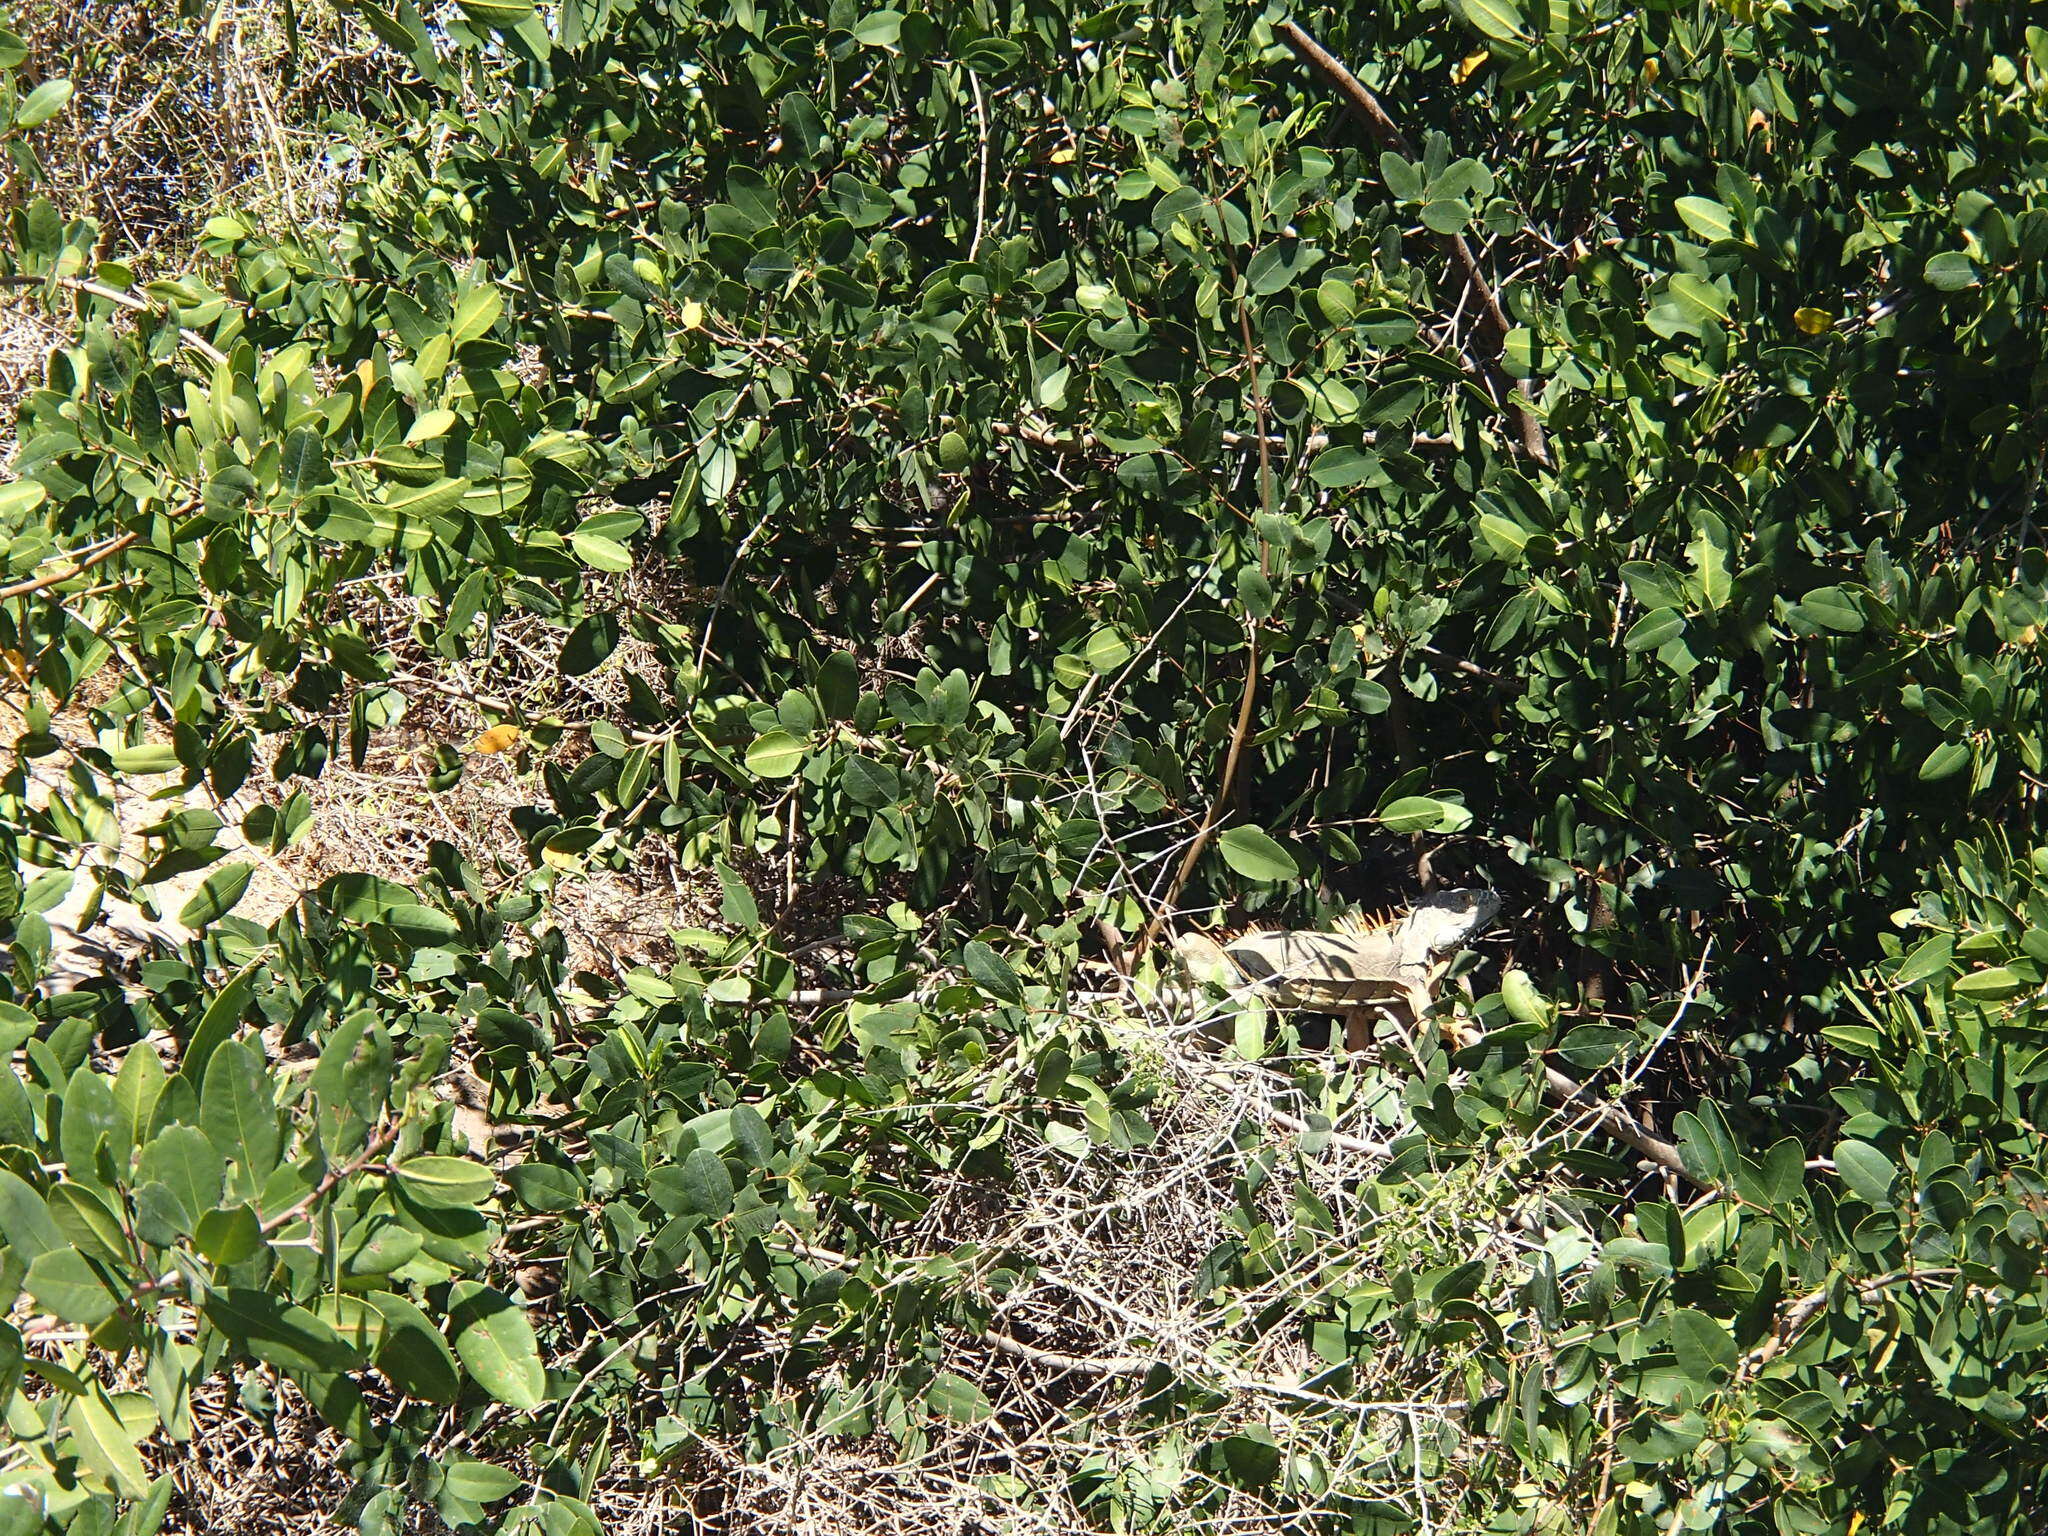 Image of Green iguana